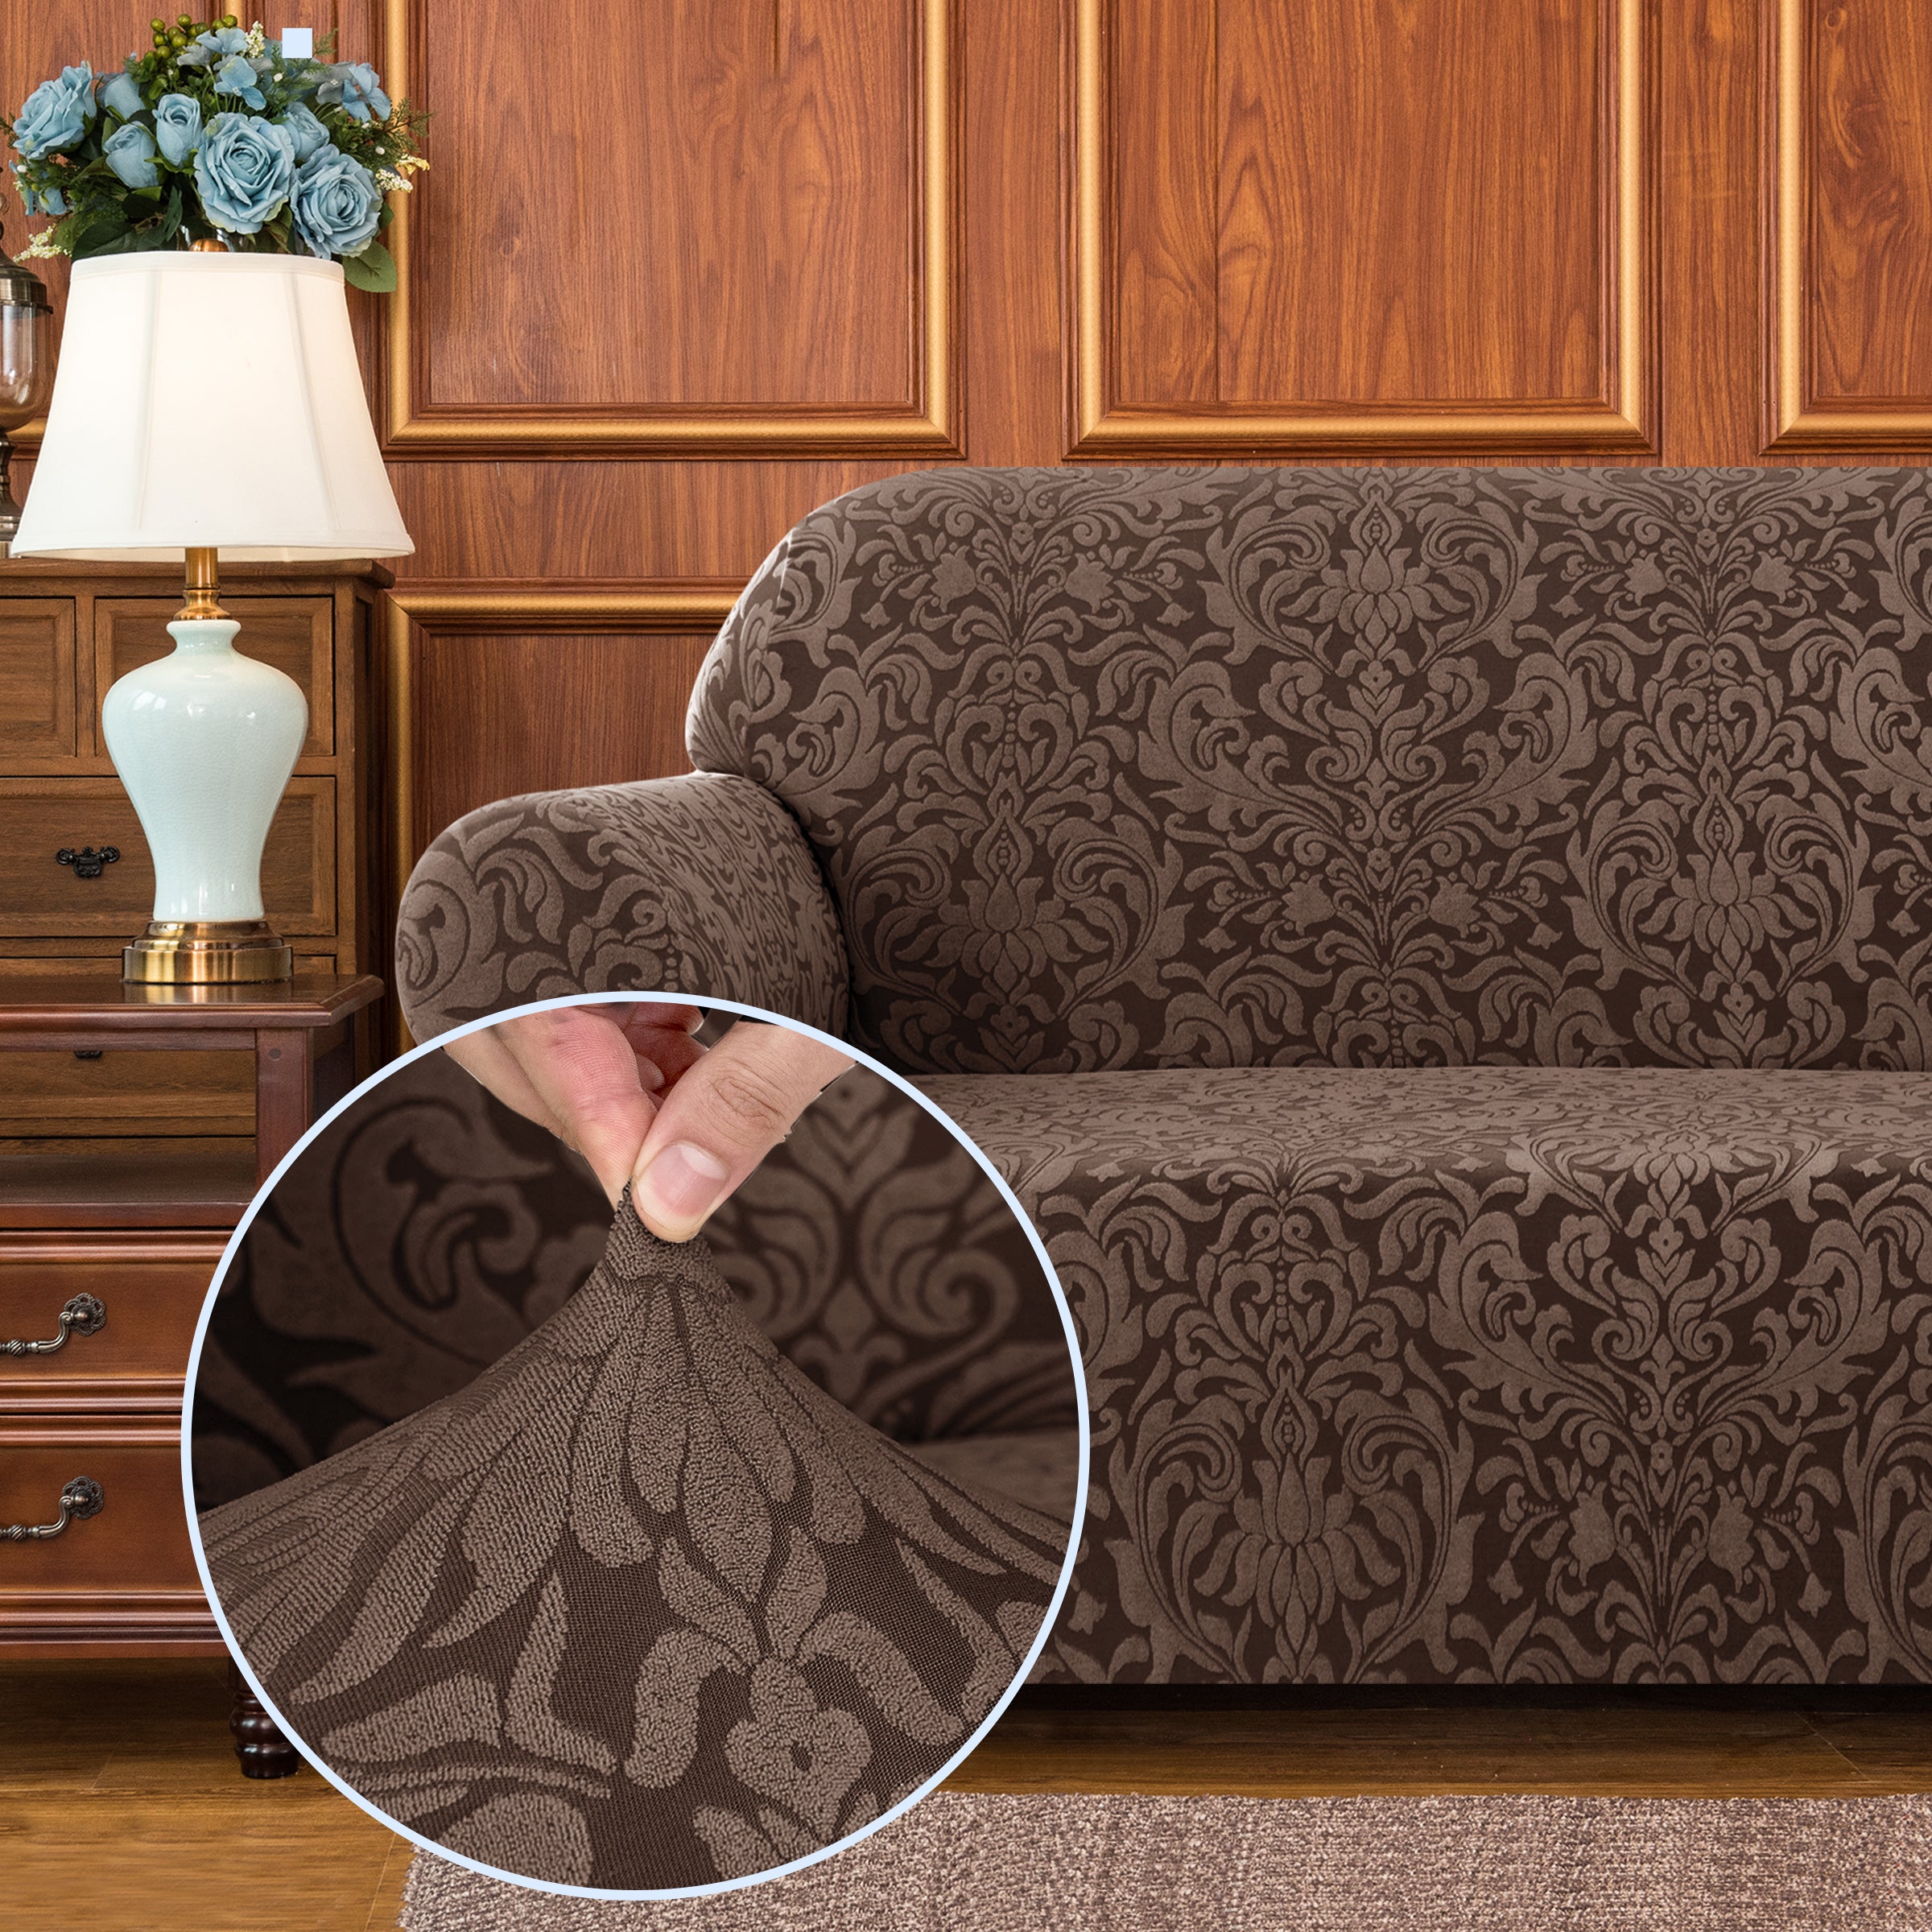 Barry Grayish Jacquard Stretch Sofa Cover